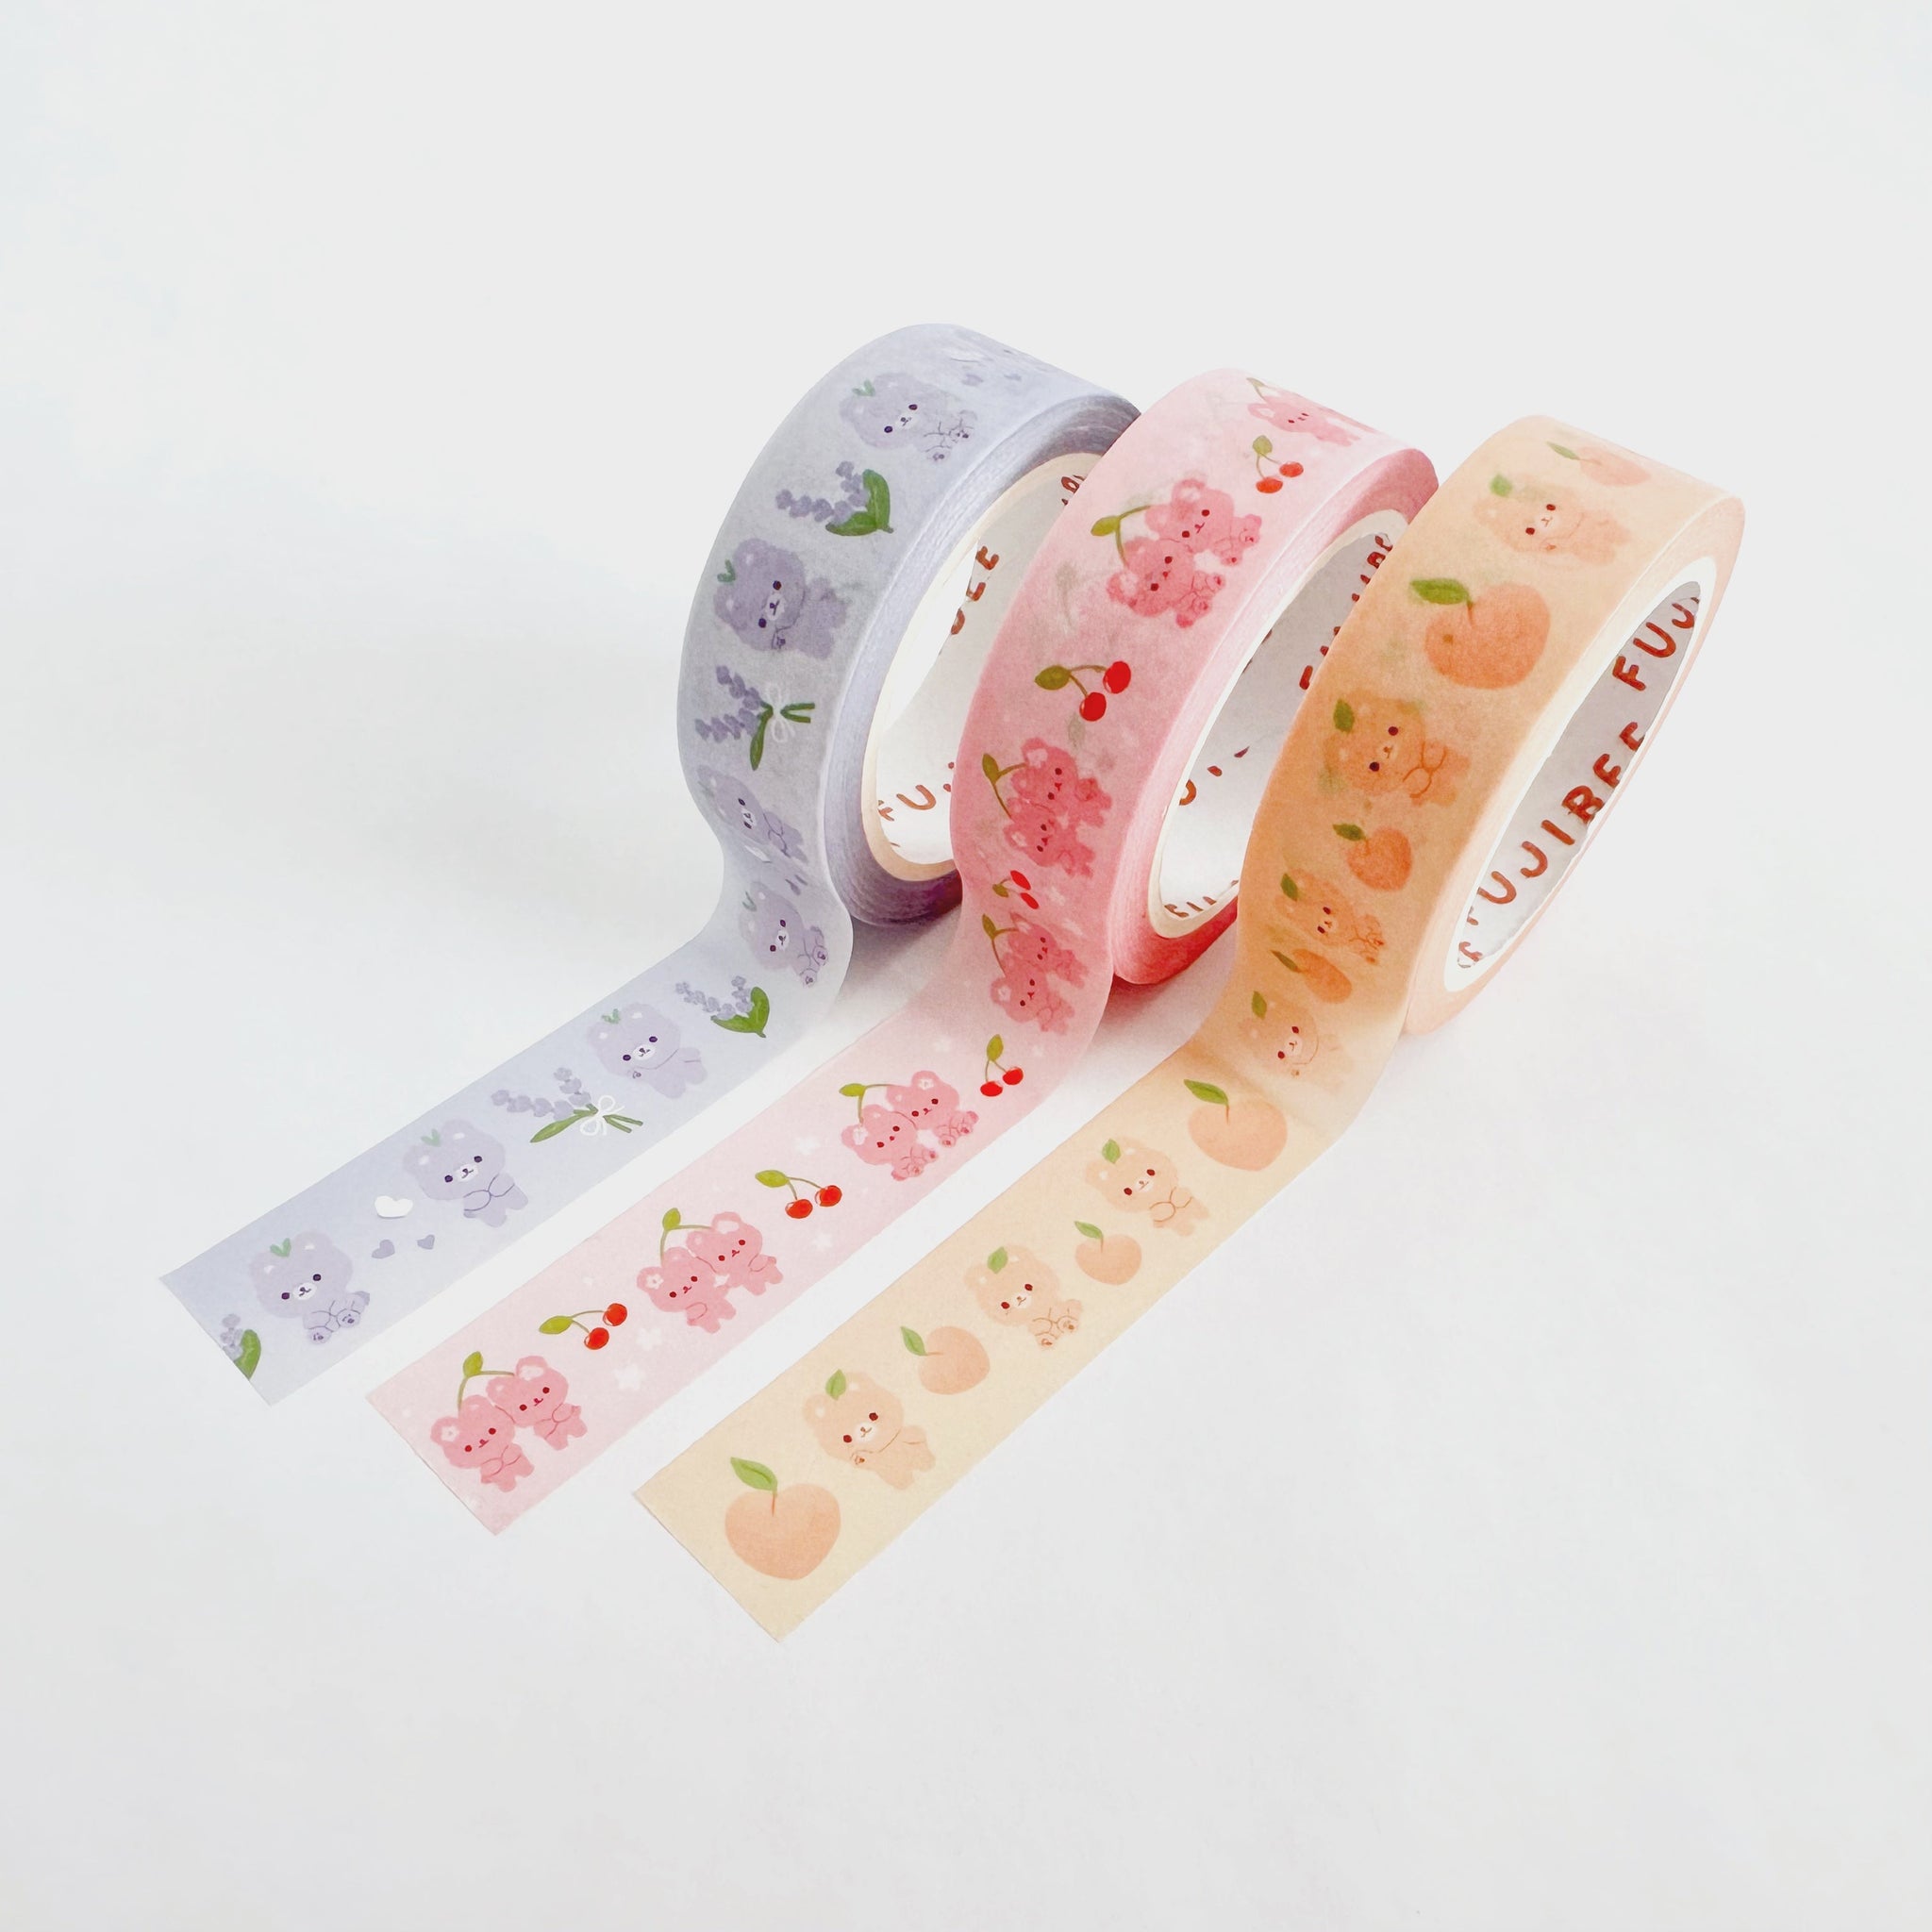  Kawaii Washi Tape Set, 8 Rolls Wide Cute Washi Tape